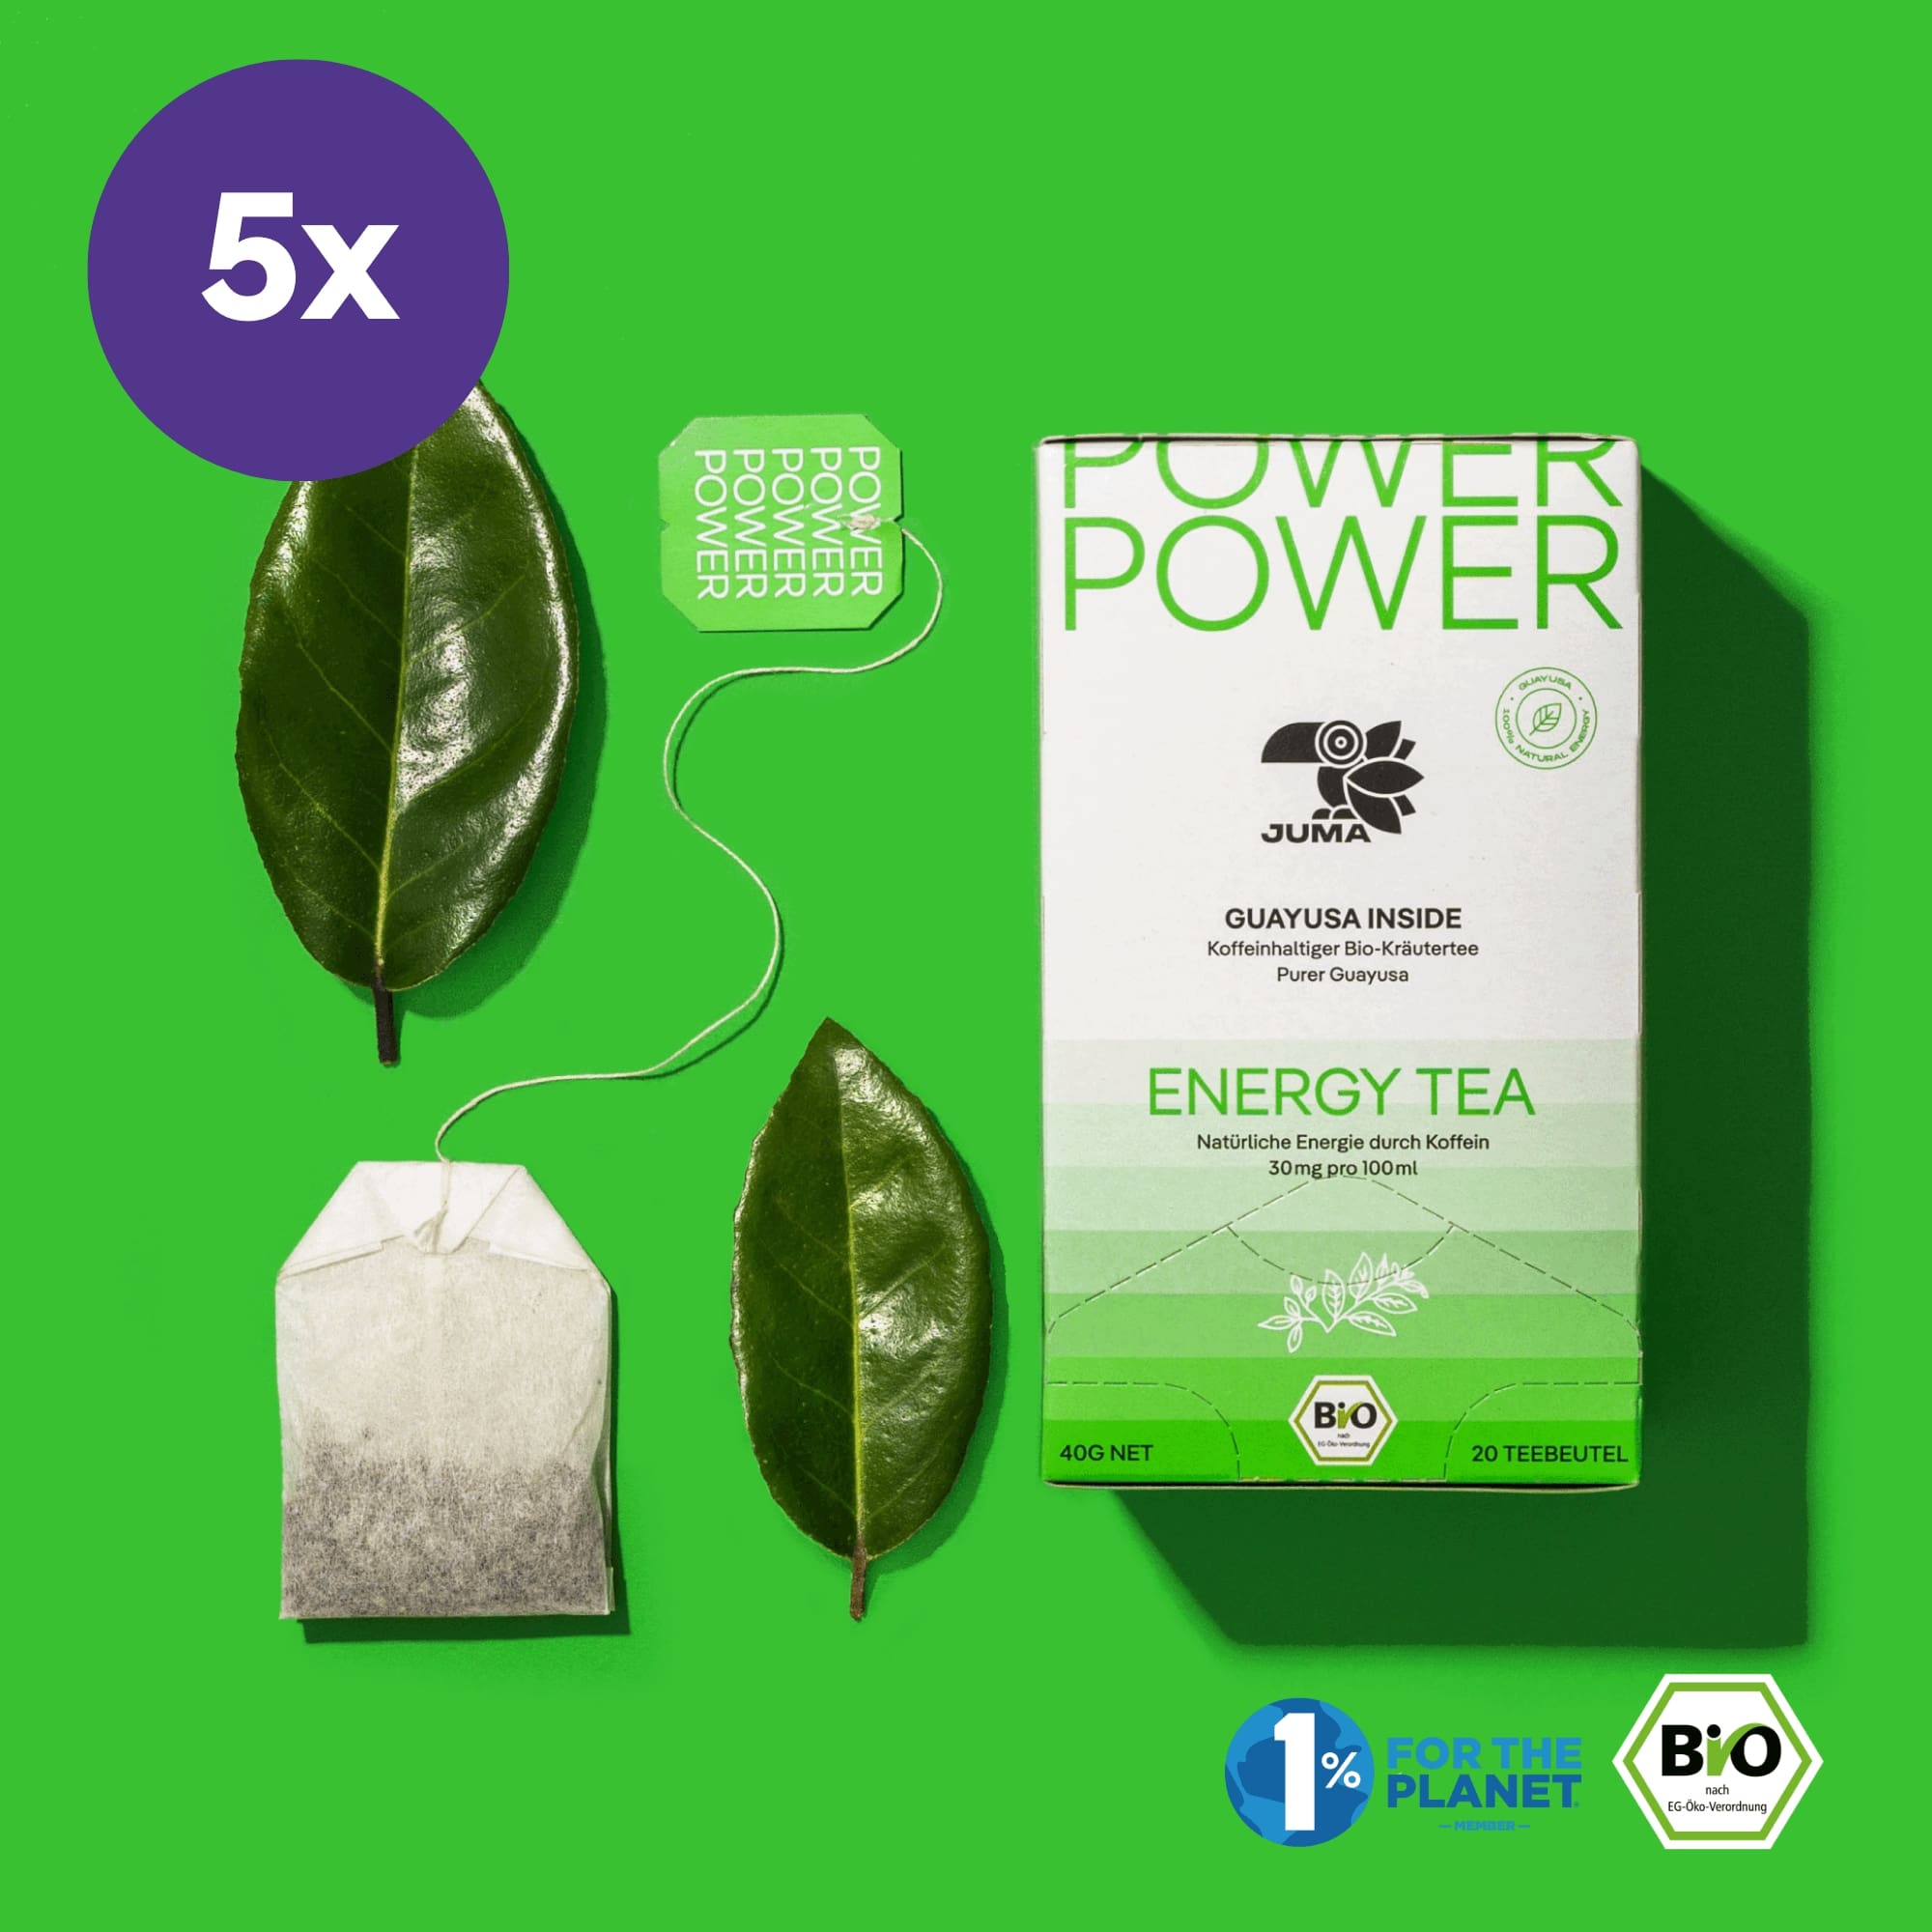 5x POWER ENERGY TEA PACK (5x20 Teebeutel)